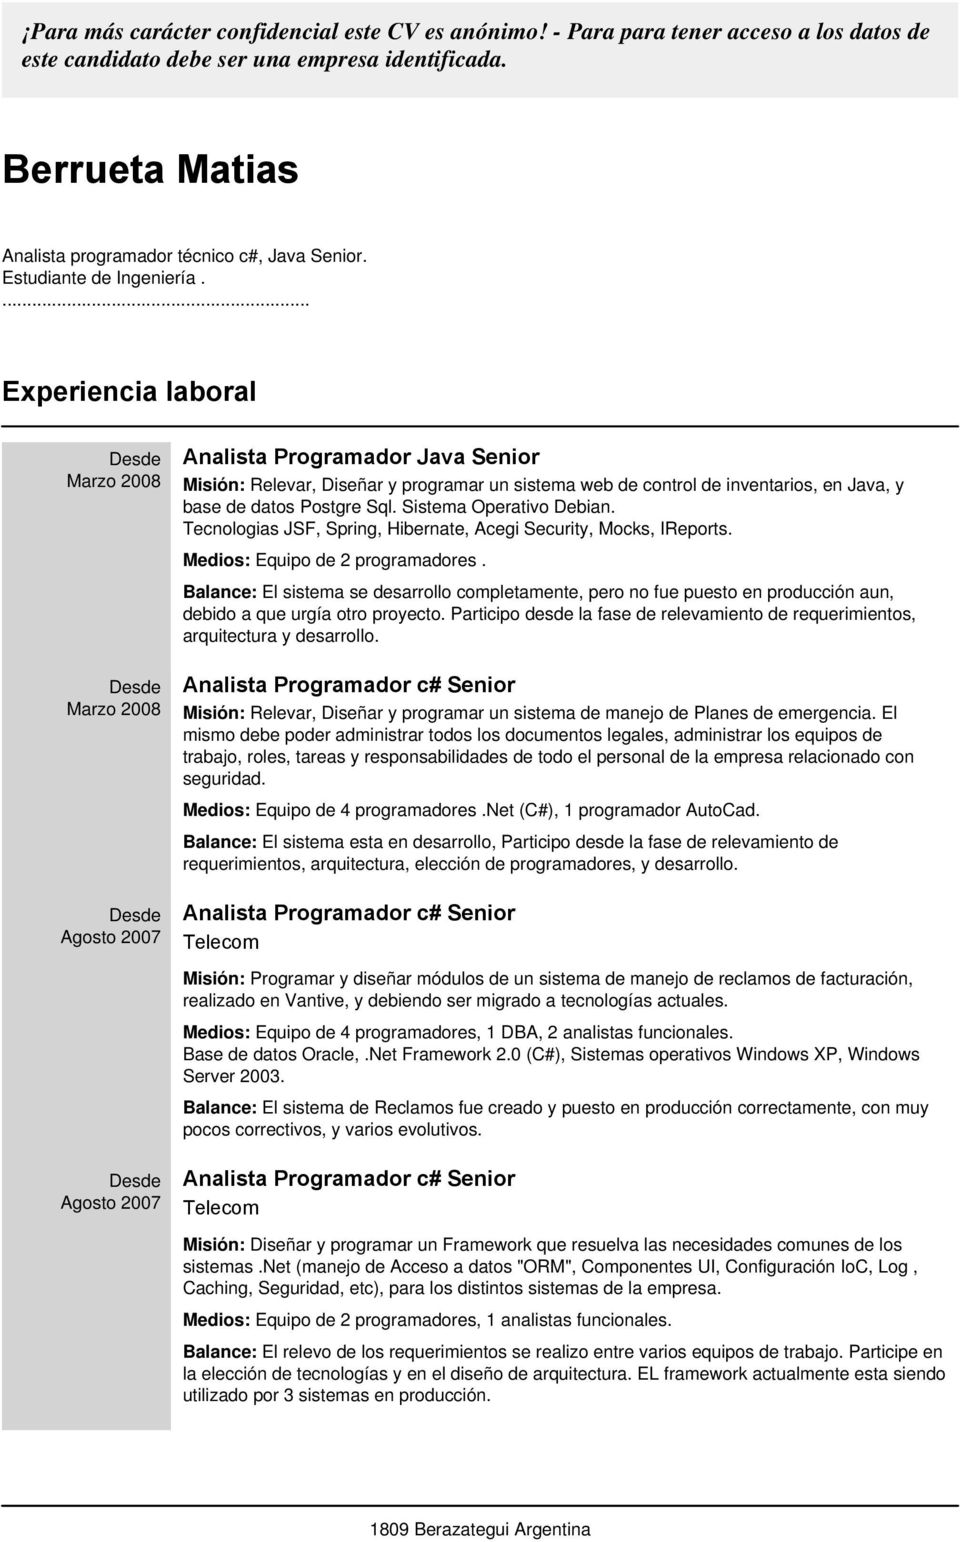 ... Experiencia laboral Analista Programador Java Senior Misión: Relevar, Diseñar y programar un sistema web de control de inventarios, en Java, y base de datos Postgre Sql. Sistema Operativo Debian.